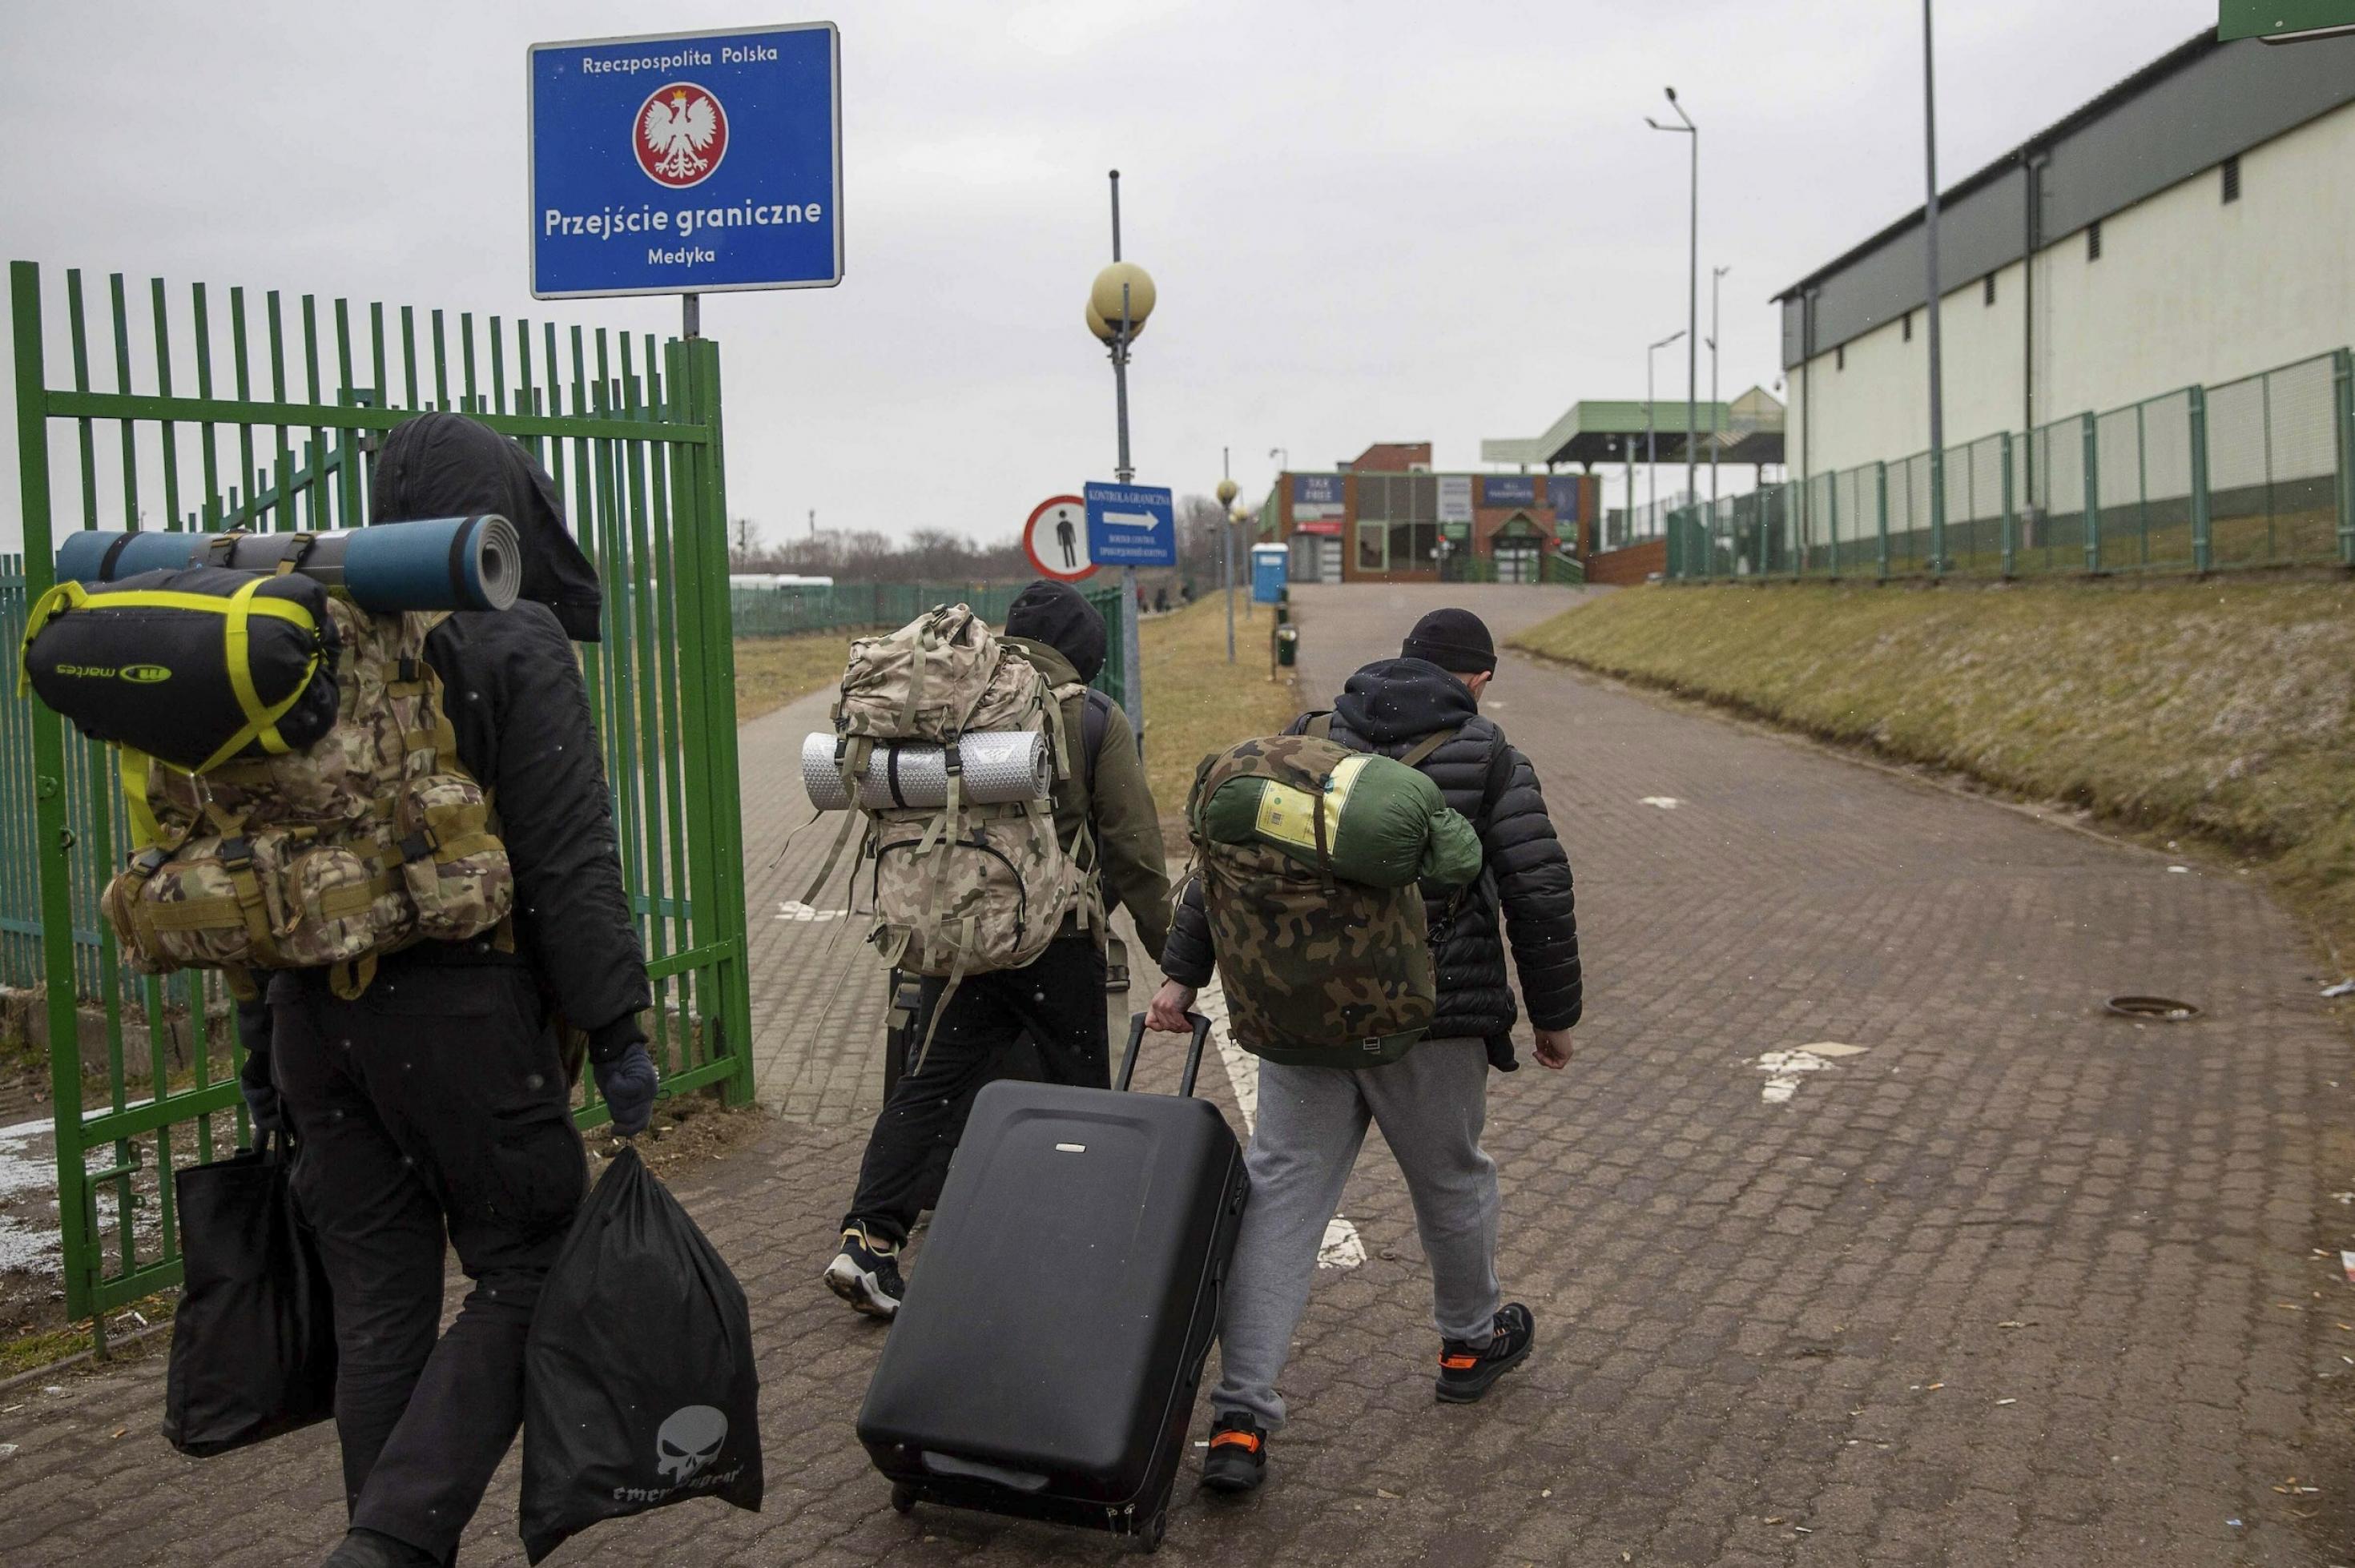 Drei Männer mit Rucksäcken und Koffern von hinten gesehen in einer Grenzanlage, die man an einem Schild mit dem polnischen Hoheitszeichen erkennt.